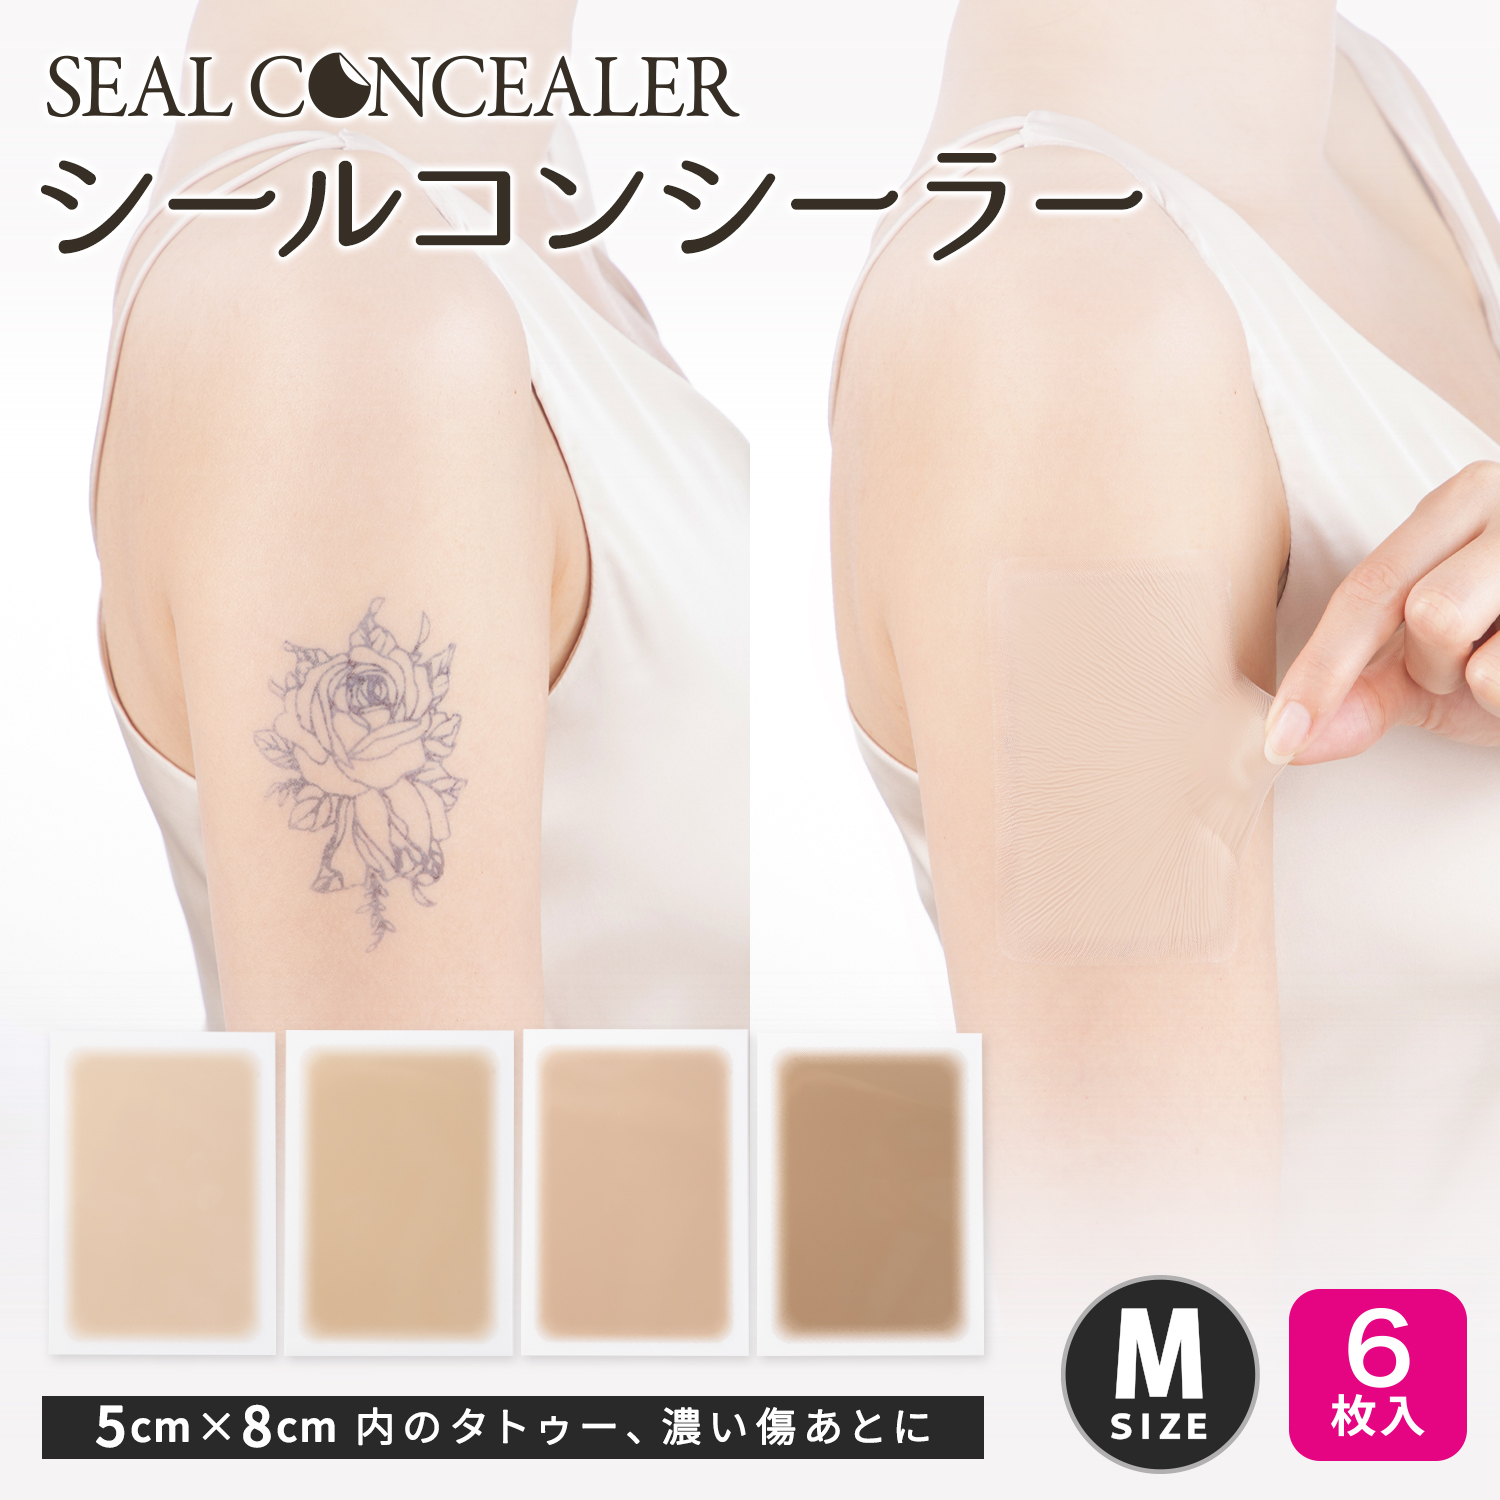 シールコンシーラー タトゥー隠し用　Mサイズ 6枚入り 日本製 自然にカバー 貼るだけ 極薄0.015mm　テカらない 目立たない 汗水に強い 肌色シール 貼りっぱなしOK 肌に負担が少ないタイプ 傷跡、アザに